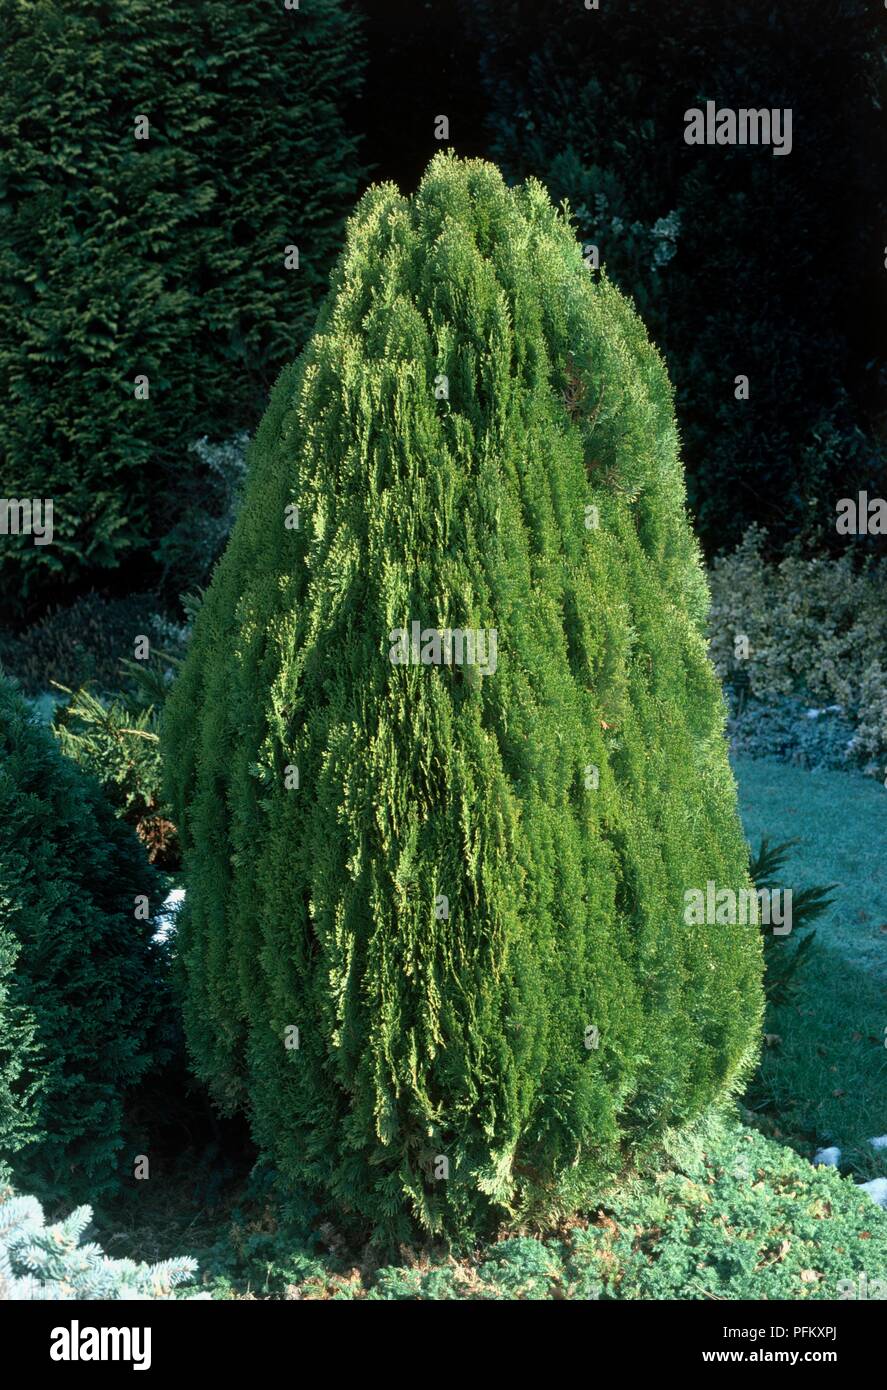 Thuja orientalis 'Aurea Nana', dwarf conifer in formal garden Stock Photo